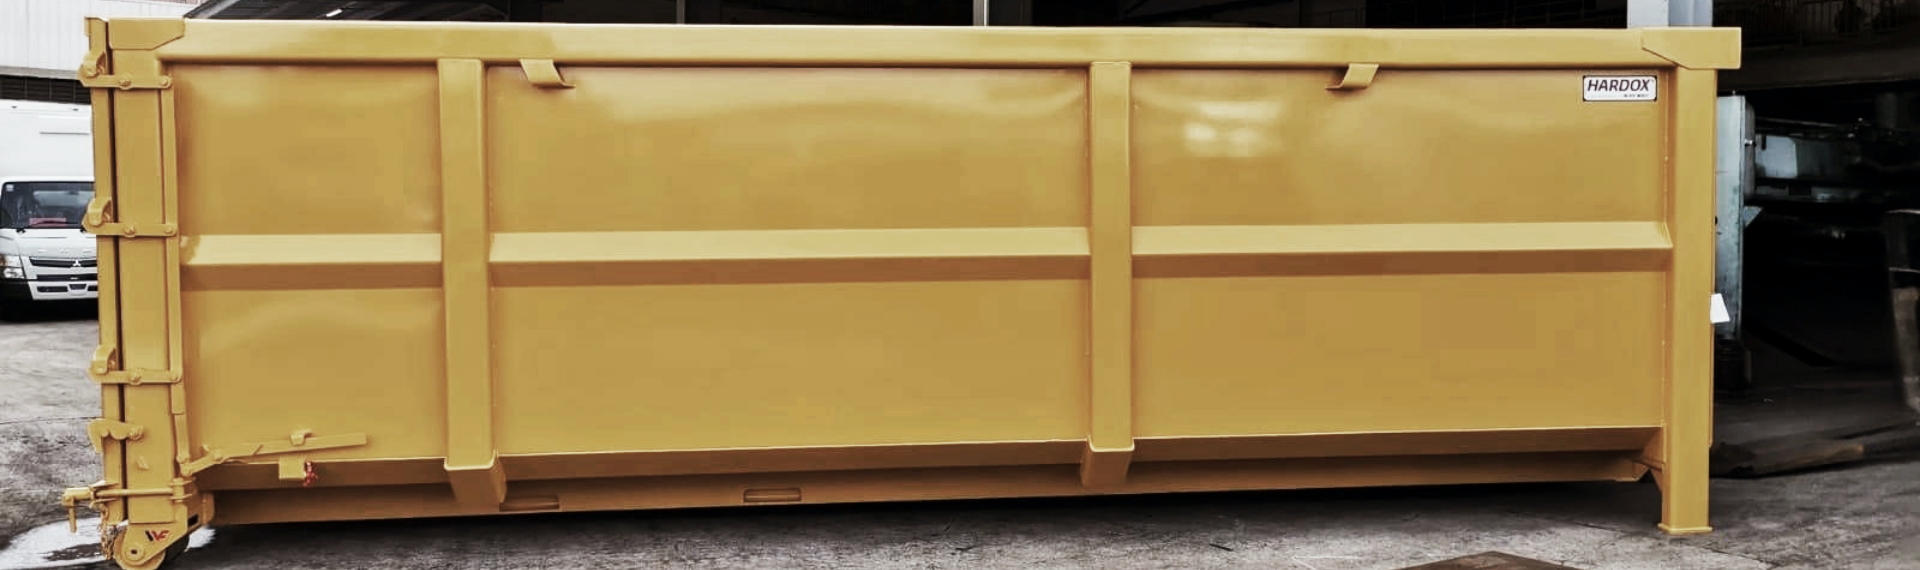 Hardox® HiAce 강재로 제작된 멋진 노란 철재 폐기물 컨테이너.